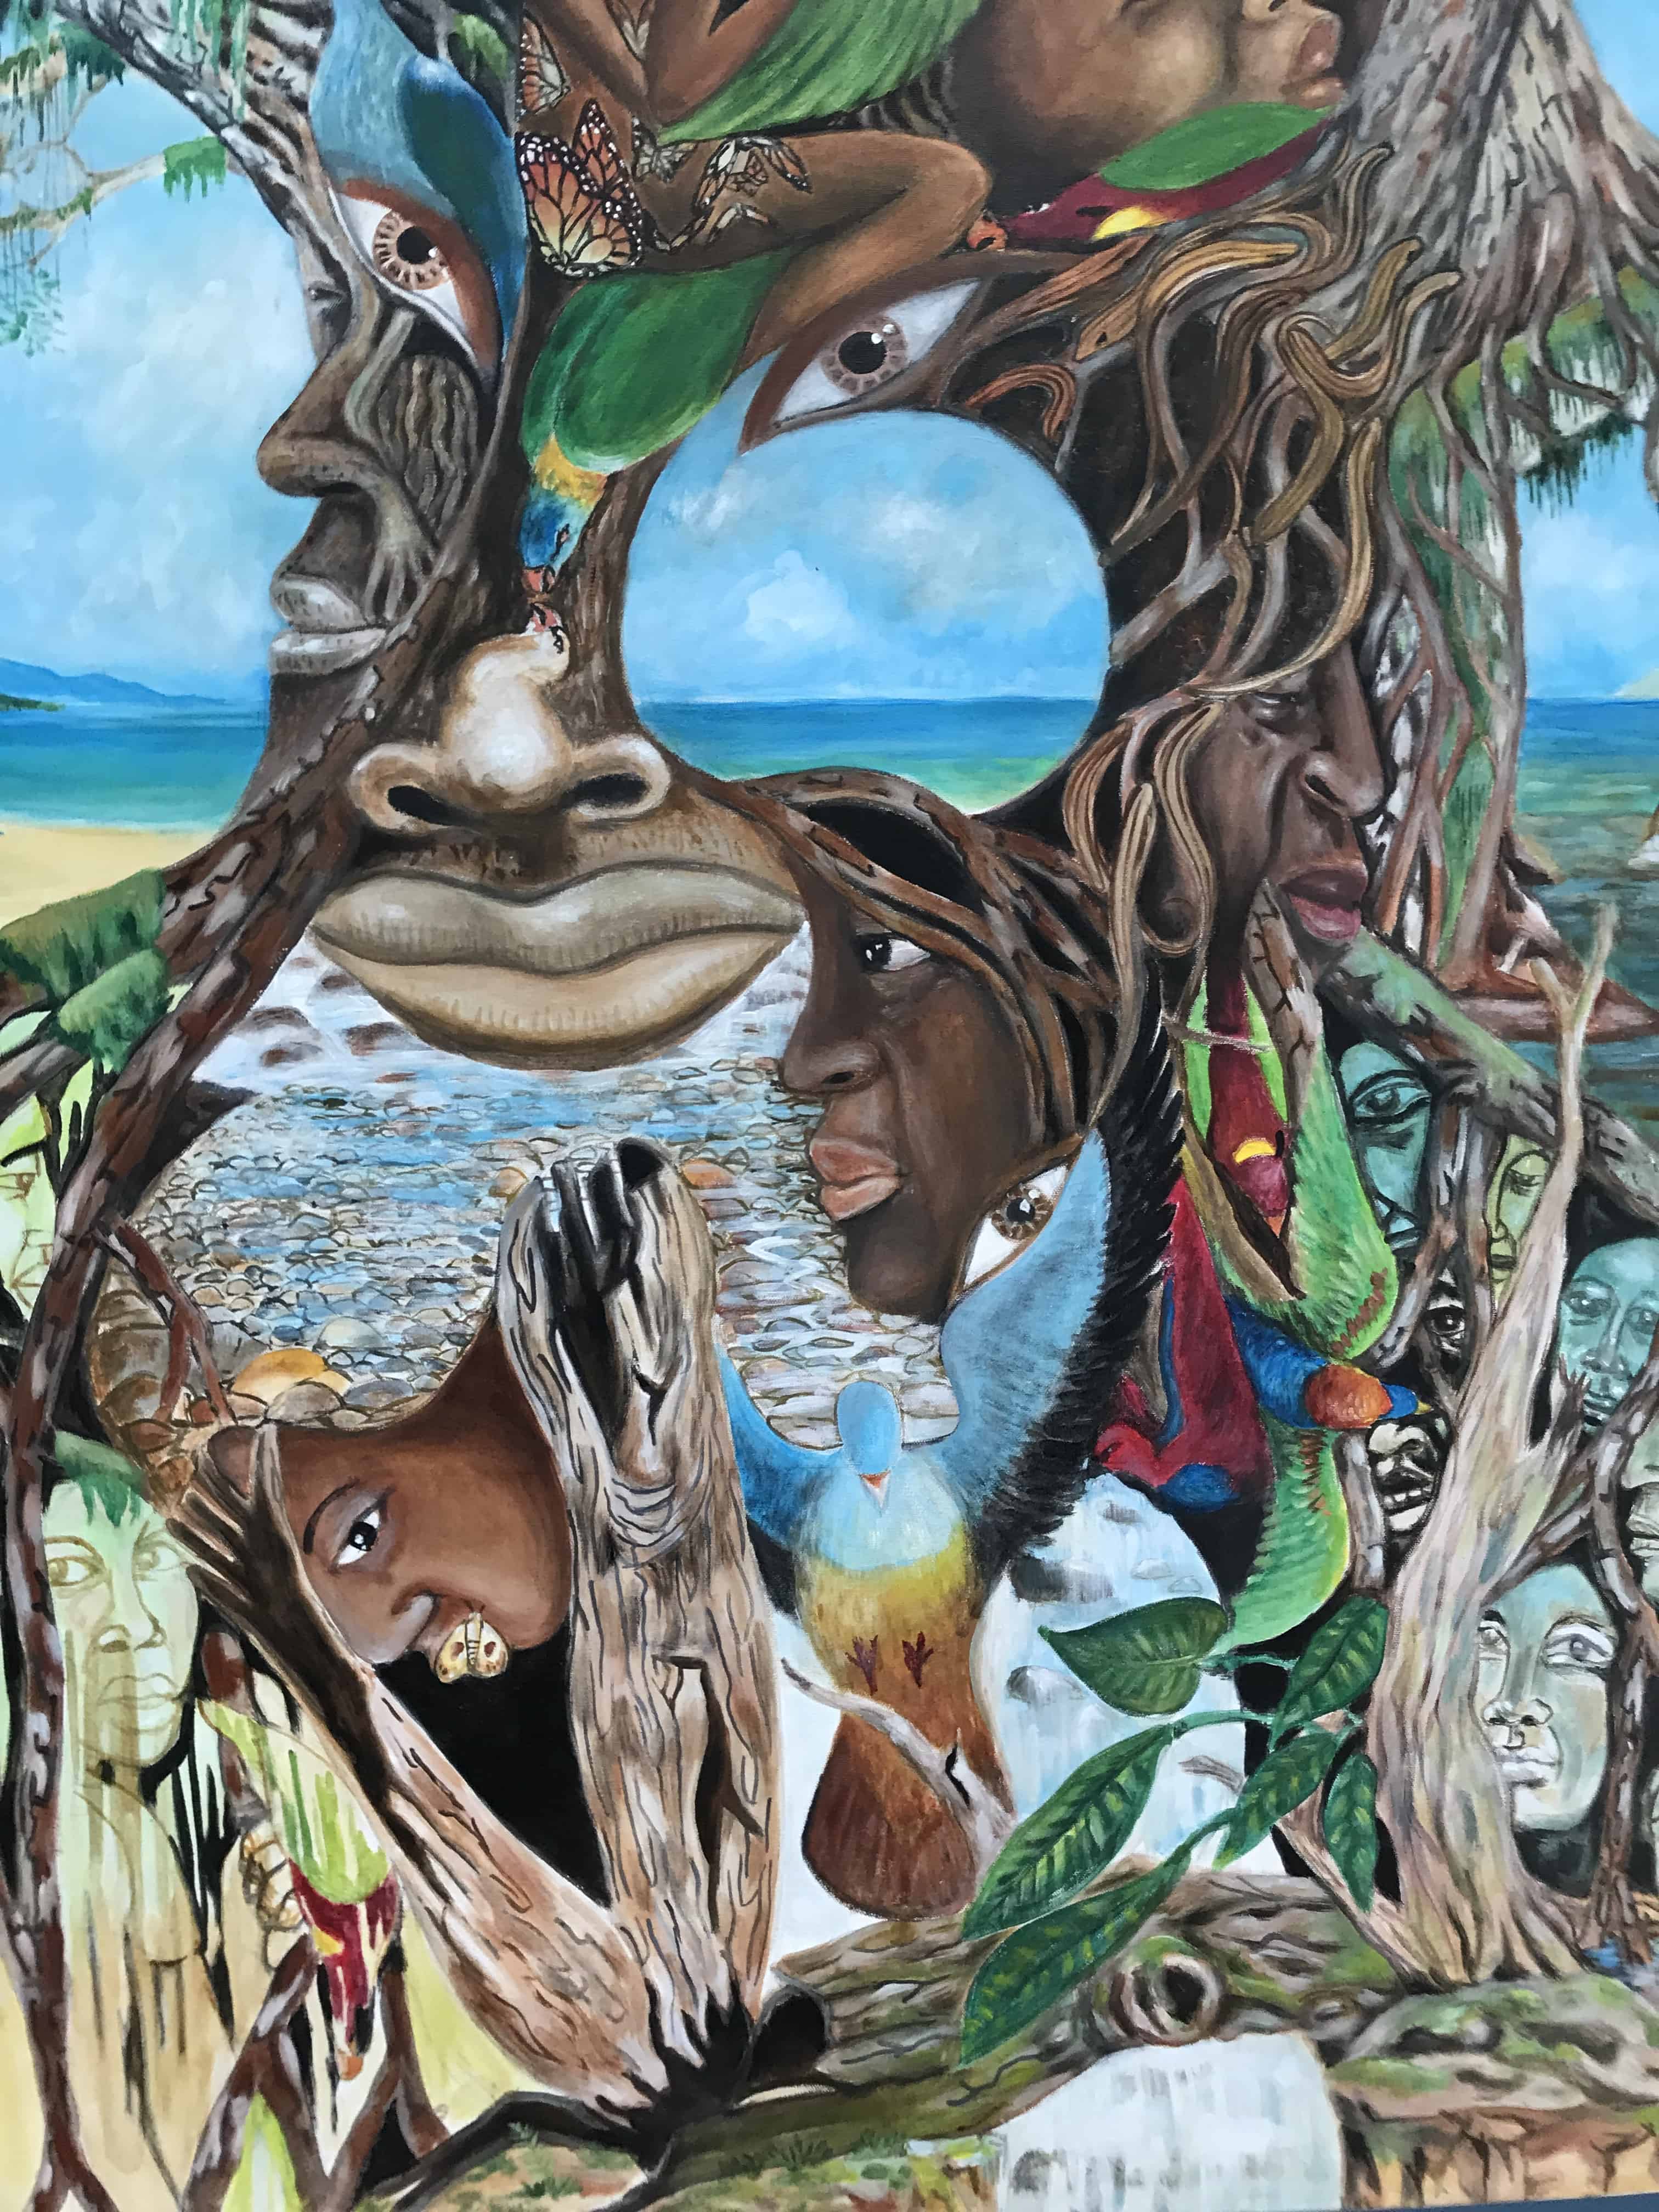 Solomon Islands art